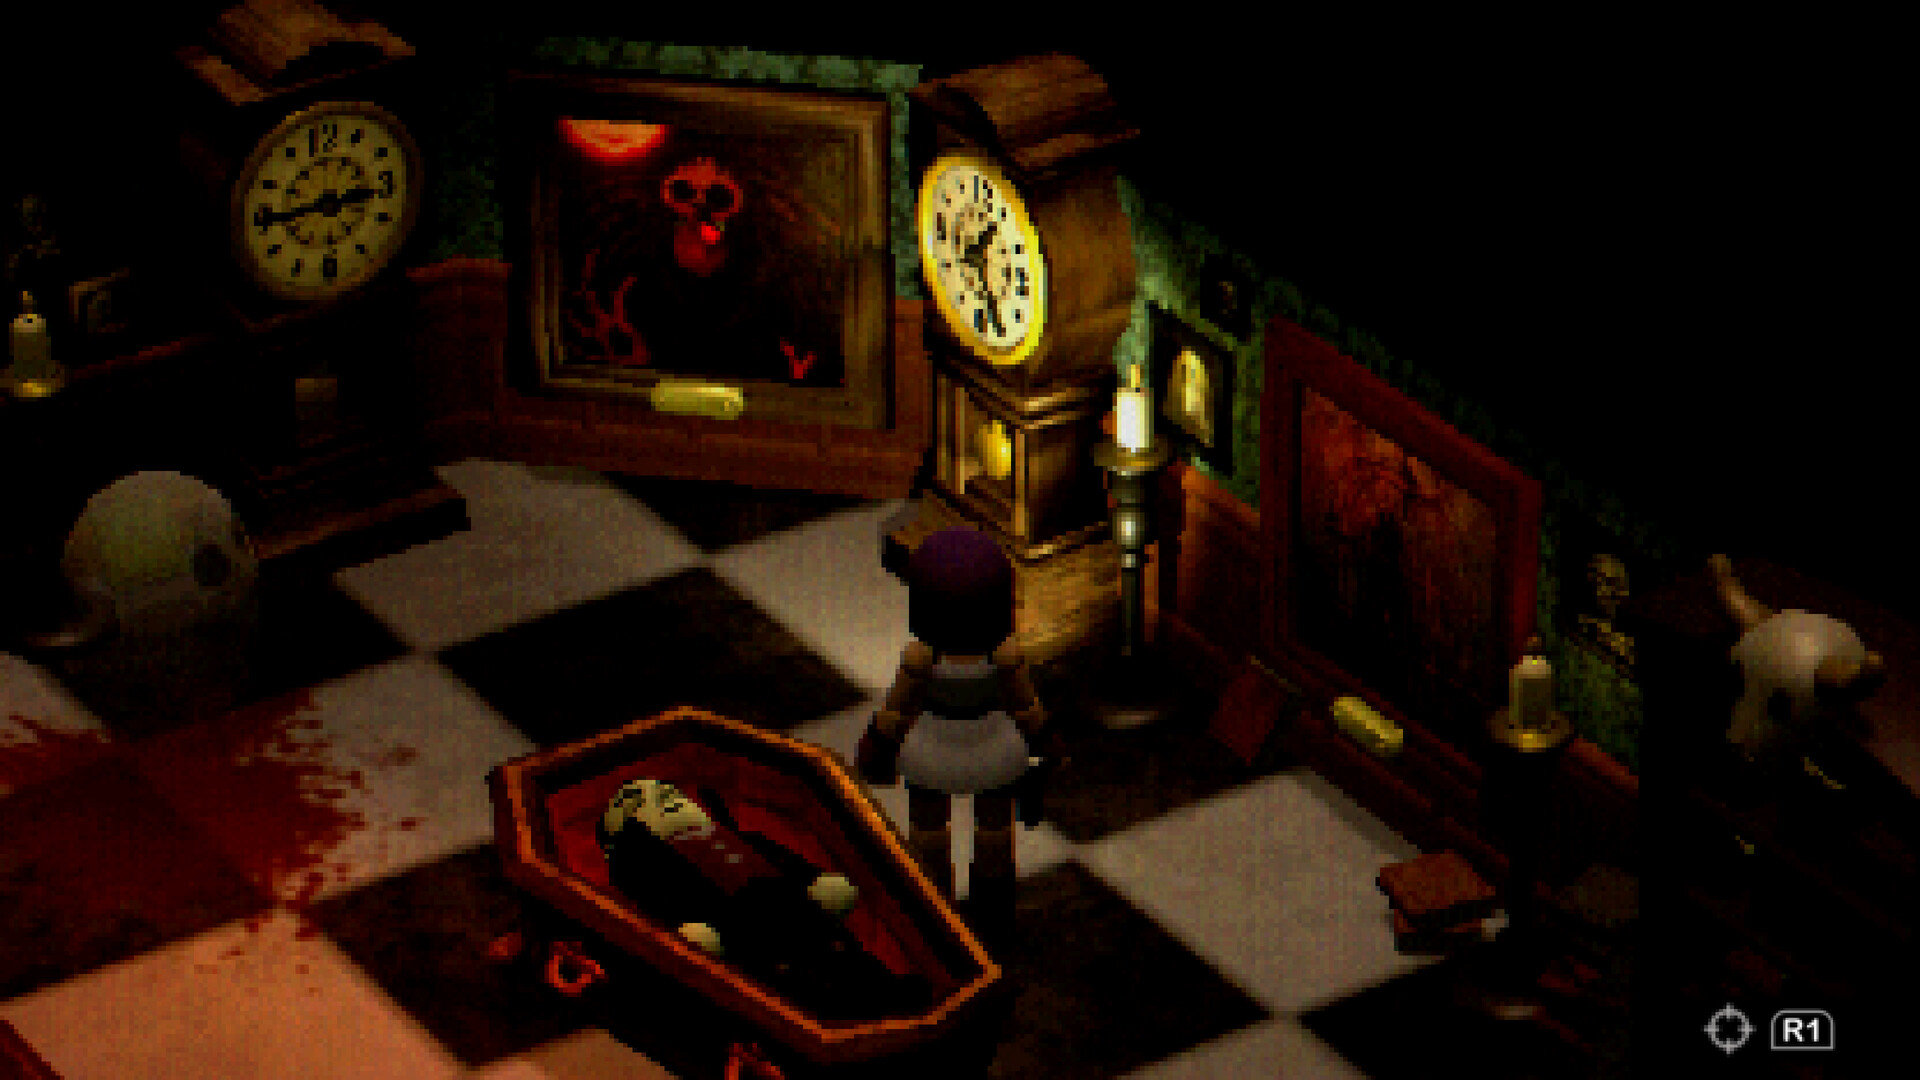 Un personnage en forme de bloc se tient dans une pièce avec un cercueil au centre sur des carreaux noirs et blancs, à côté d'une grande horloge grand-père